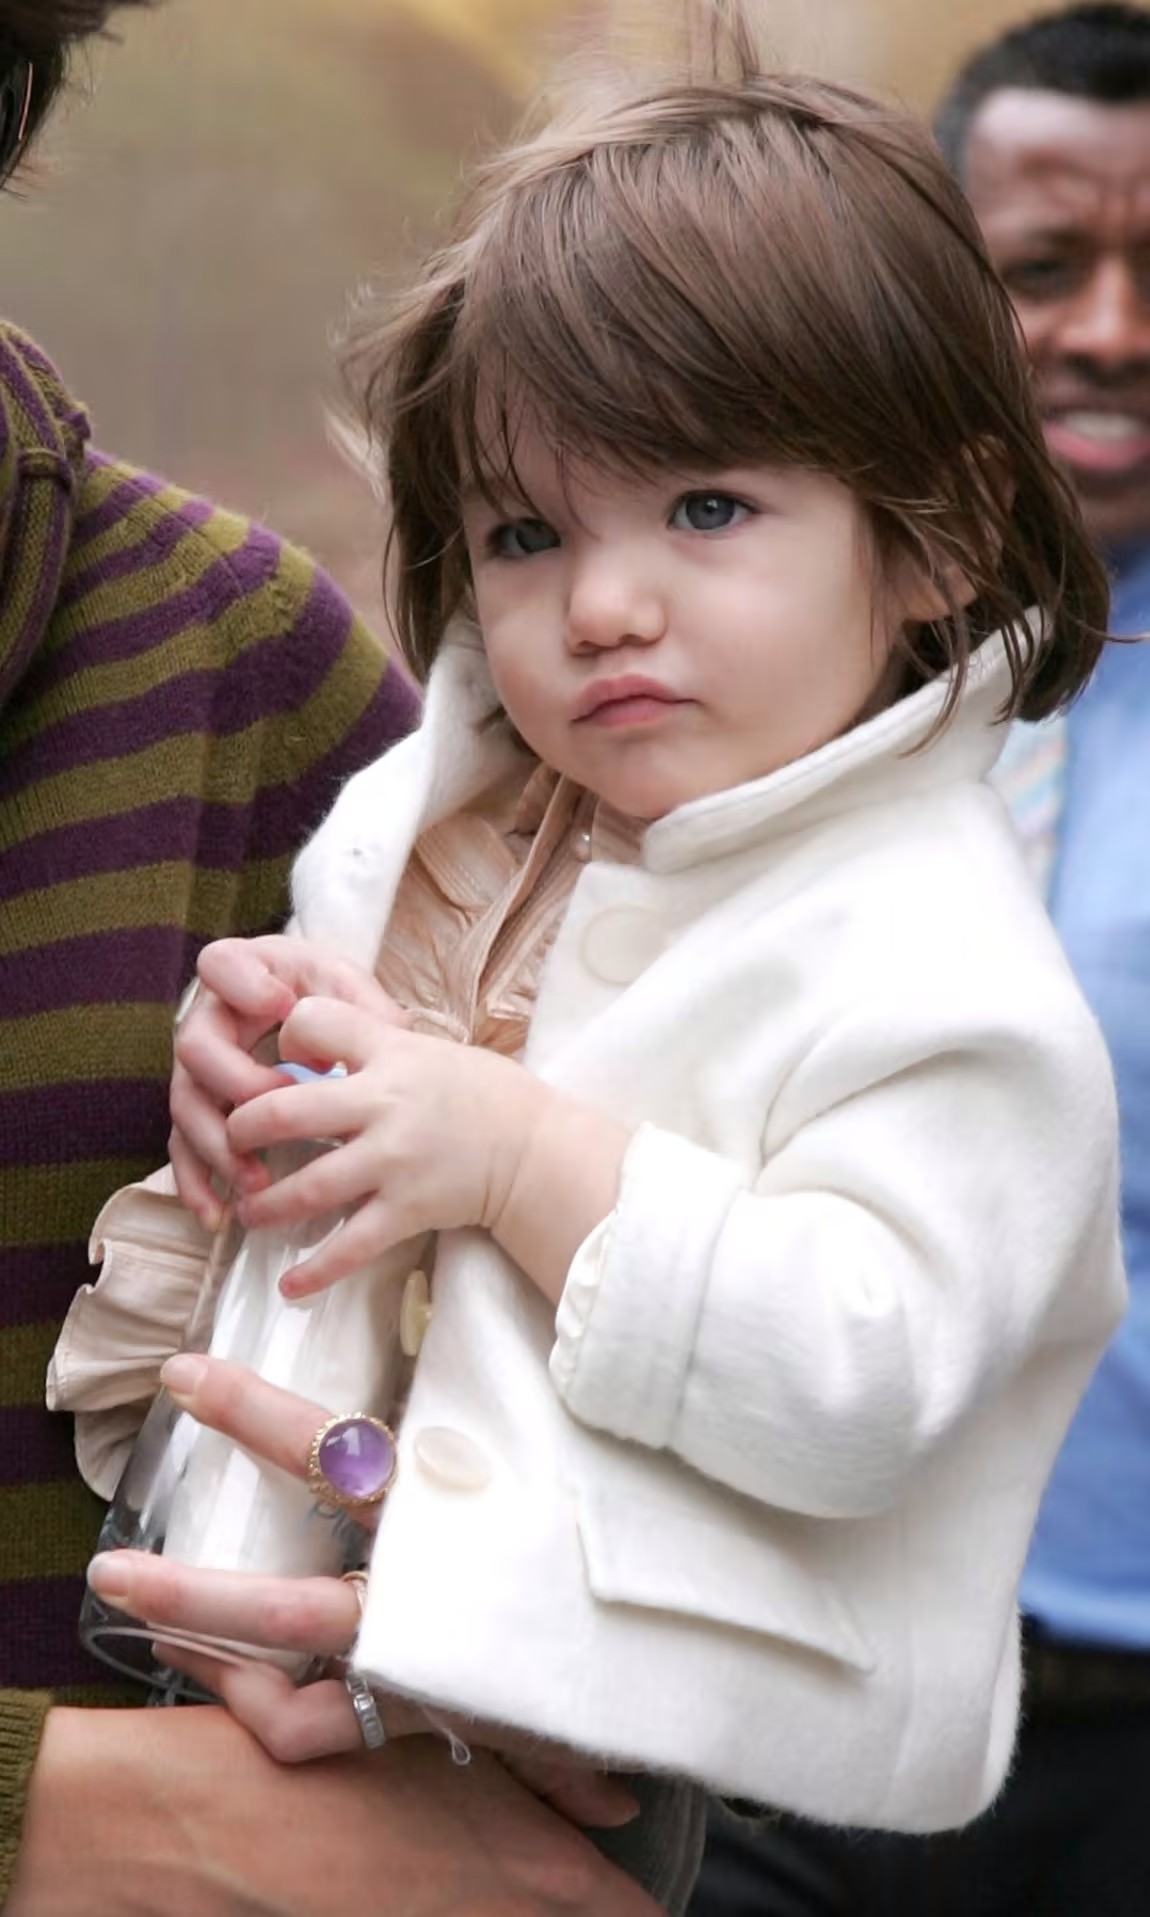 Con gái Tom Cruise được chú ý vì “dậy thì thành công”, xinh như thiên thần và mặc đẹp - 6